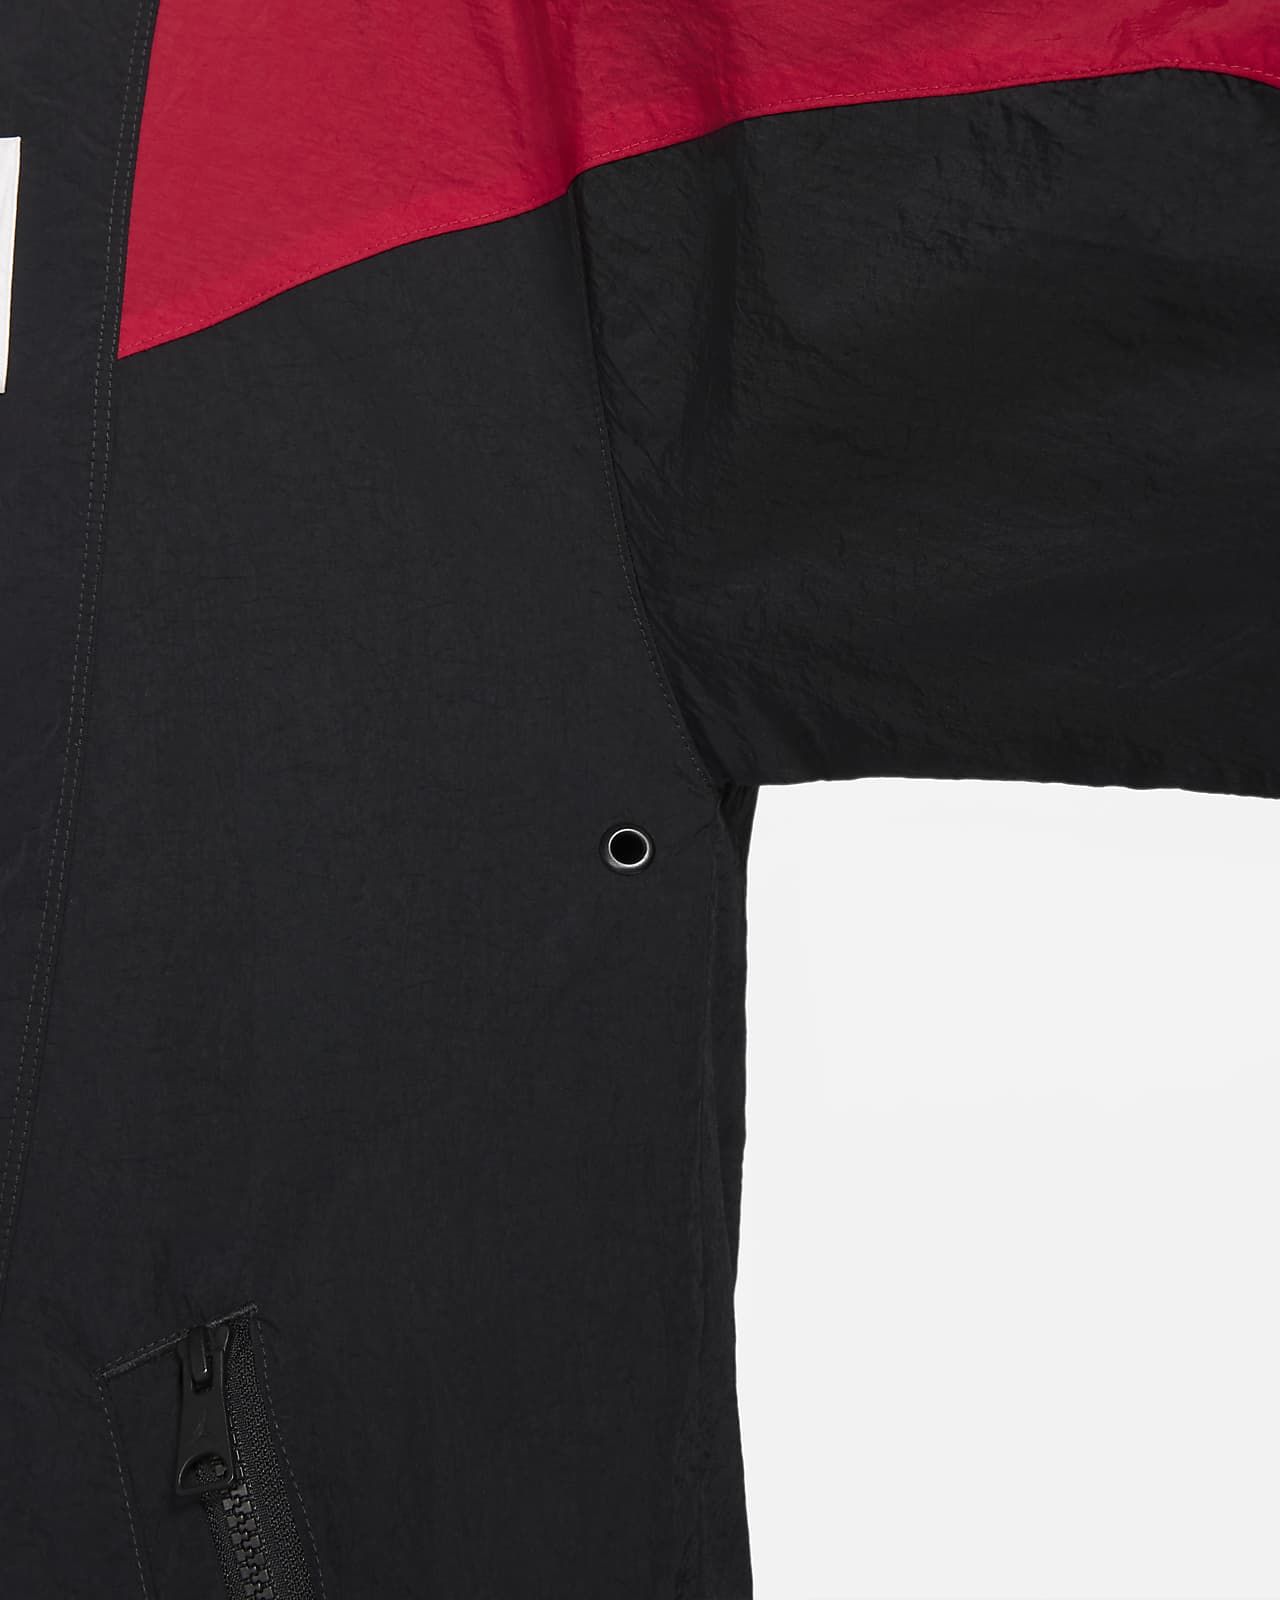 Jordan Flight Suit Men's Jacket. Nike AU